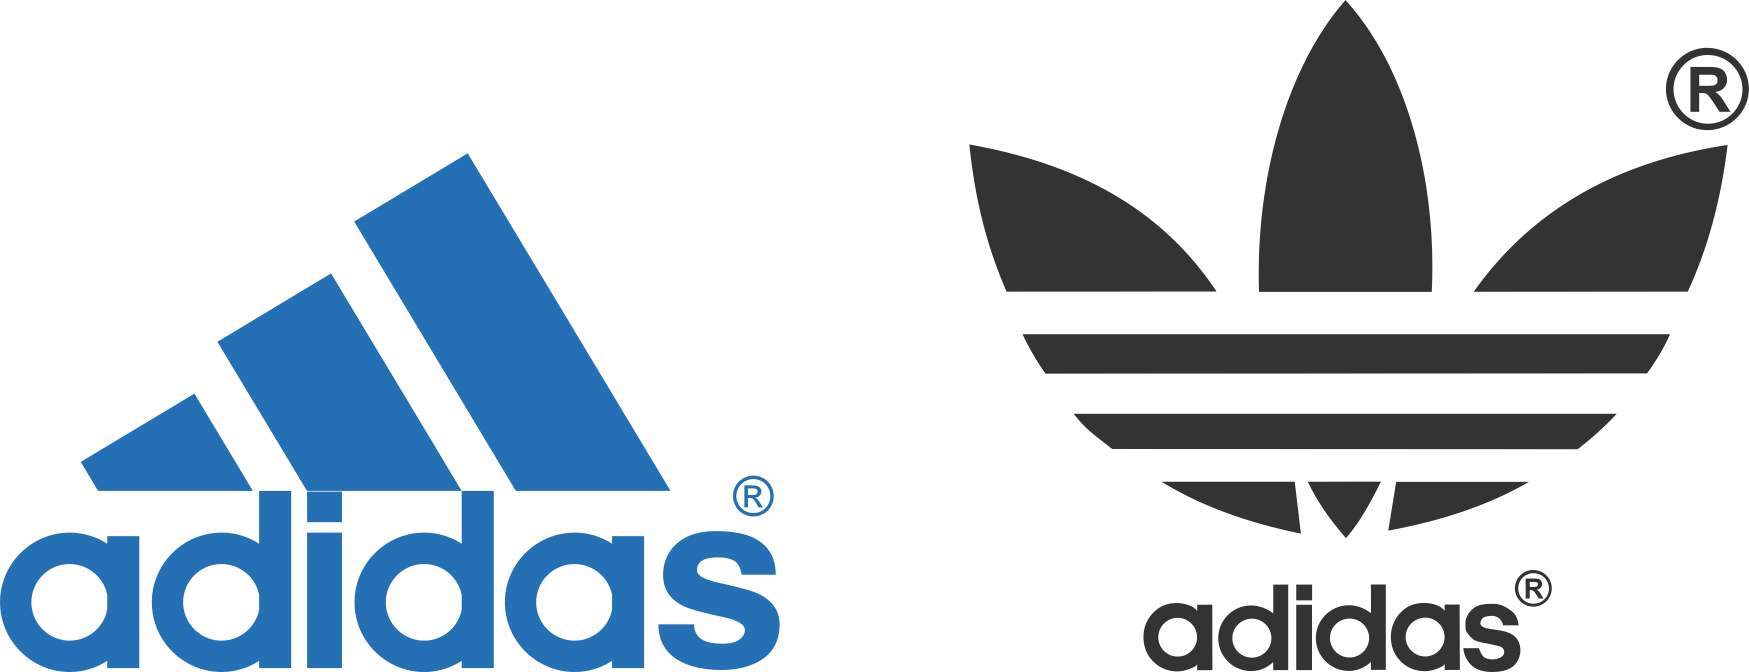 Cách tải về logo Adidas dưới định dạng PNG?
